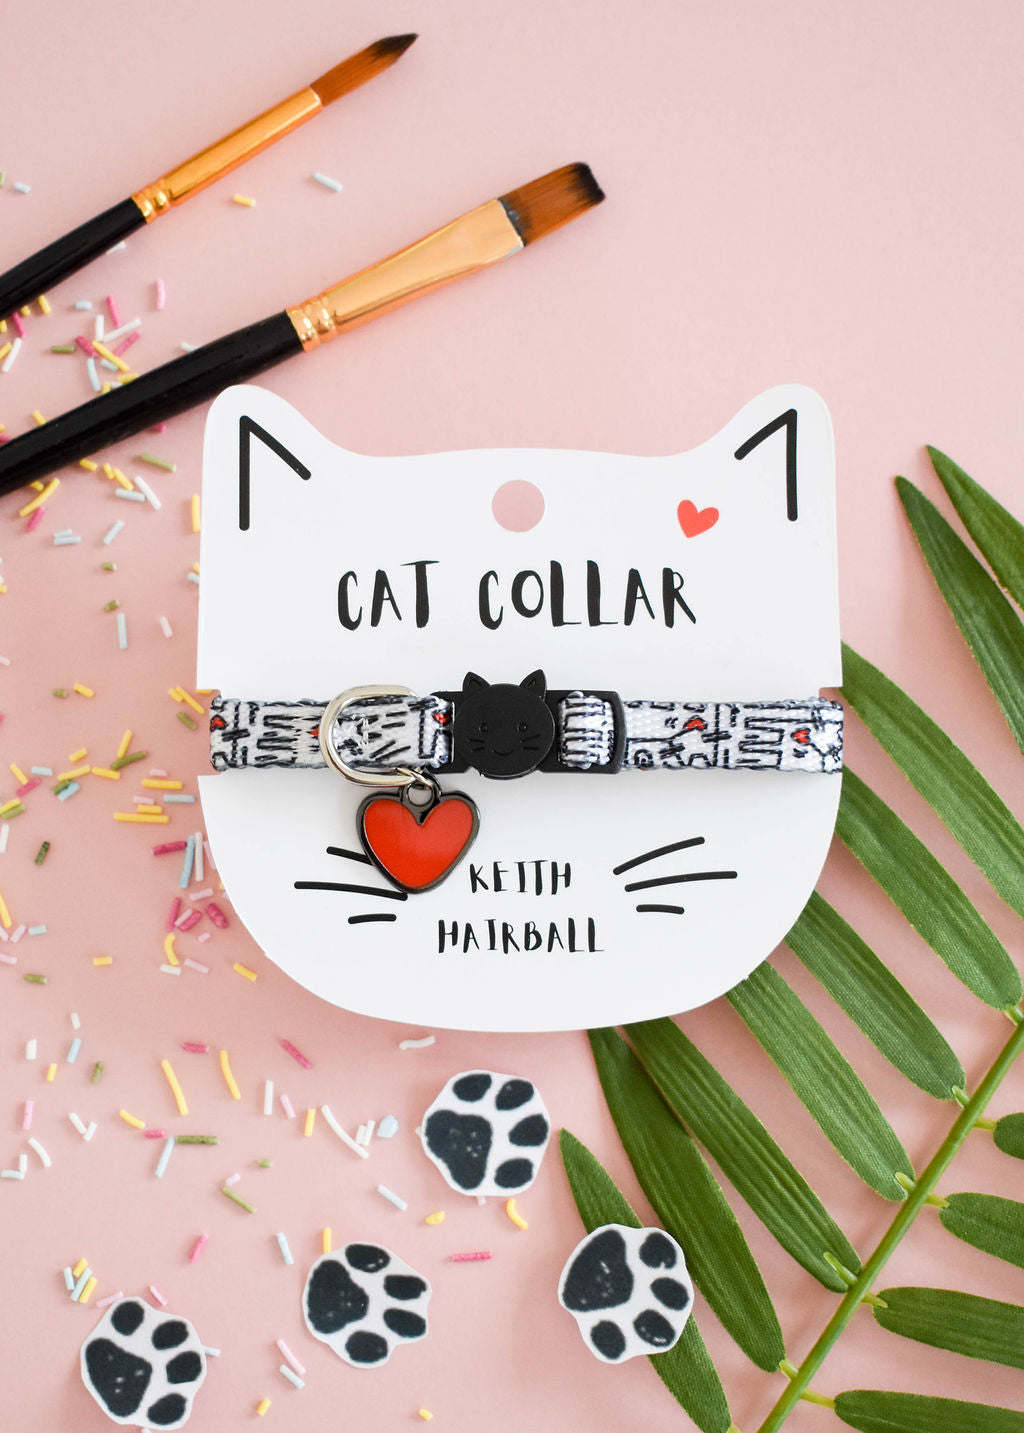 Keith Hairball Artist Cat Collar